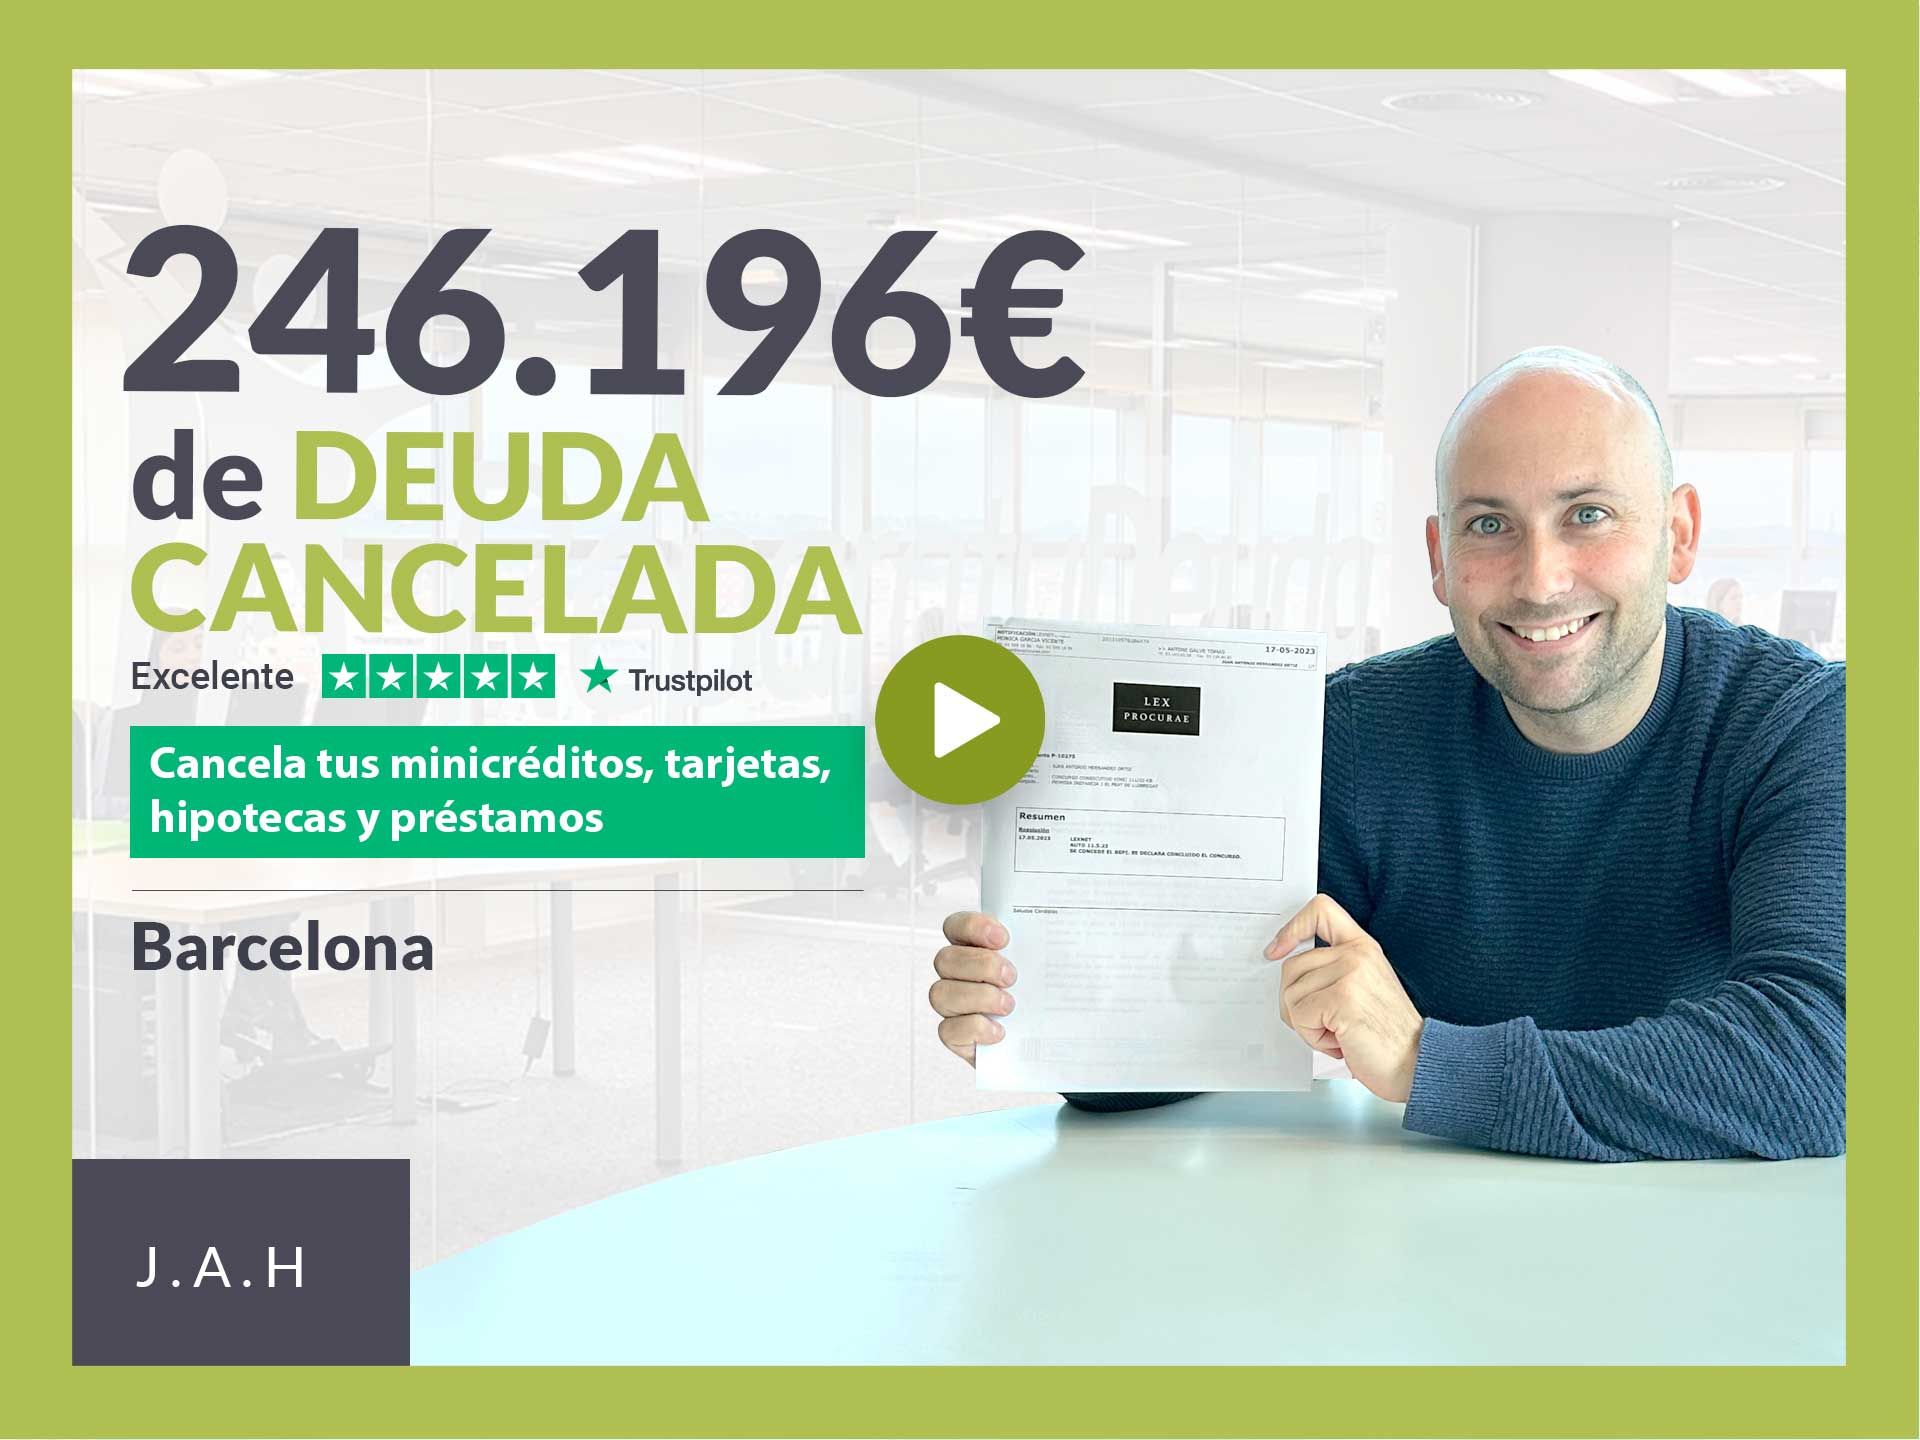 Repara tu Deuda Abogados cancela 246.196? en Barcelona (Catalunya) con la Ley de Segunda Oportunidad